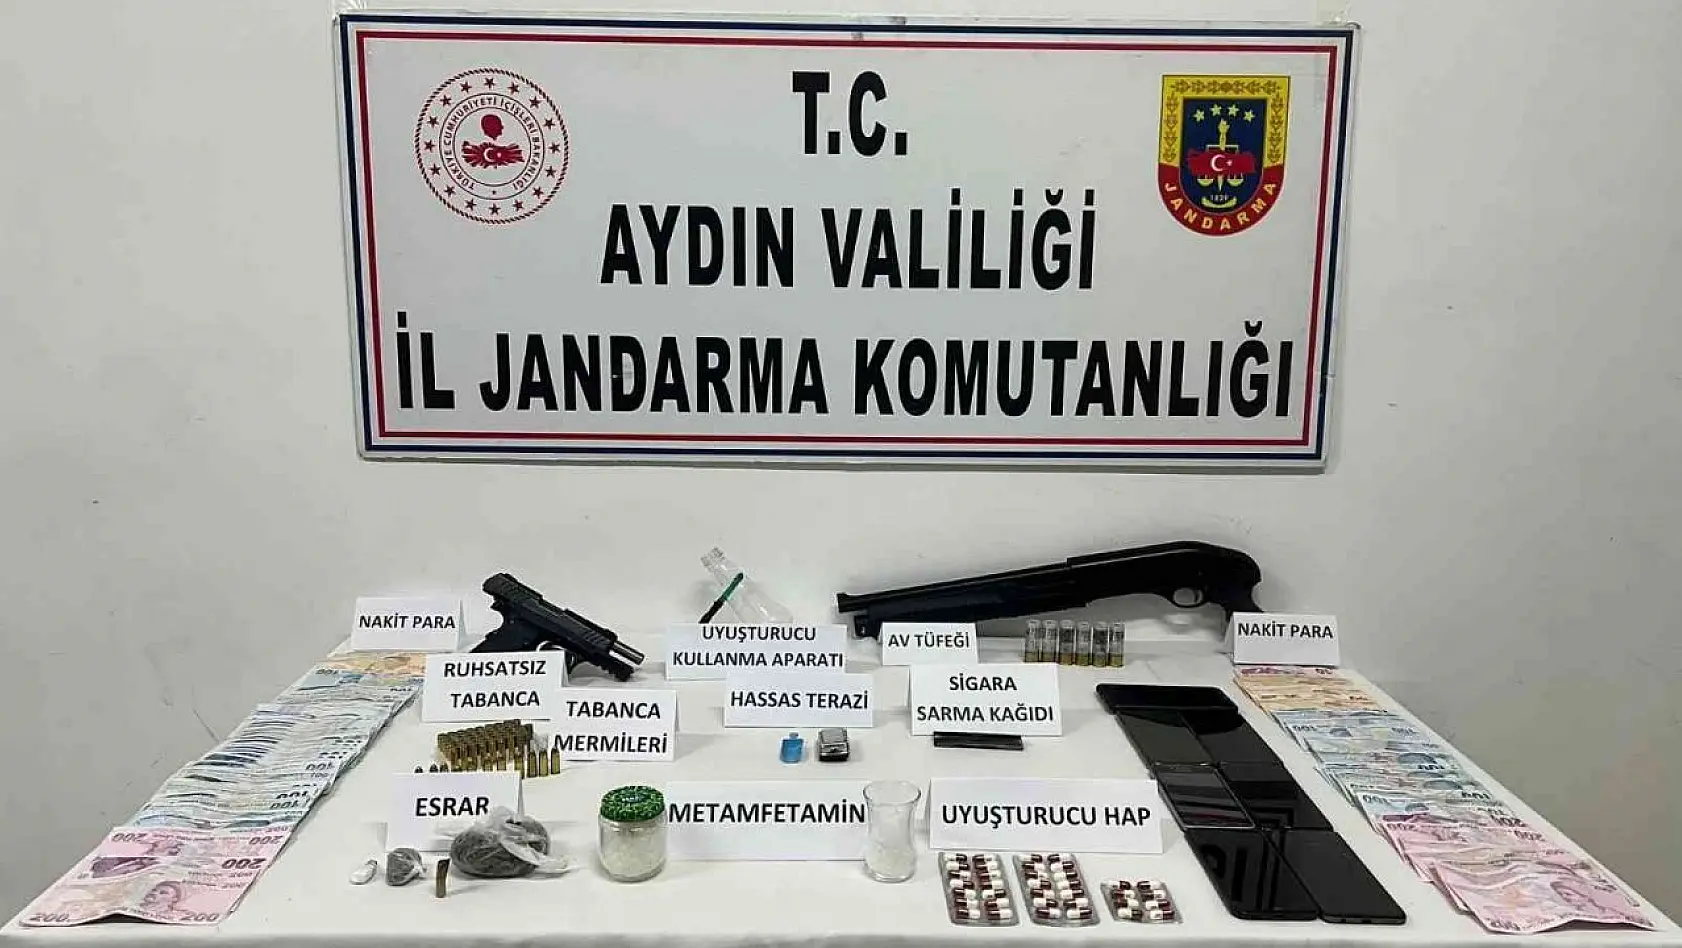 Aydın'da 24 saatte 50 uyuşturucu tacirini yakaladı